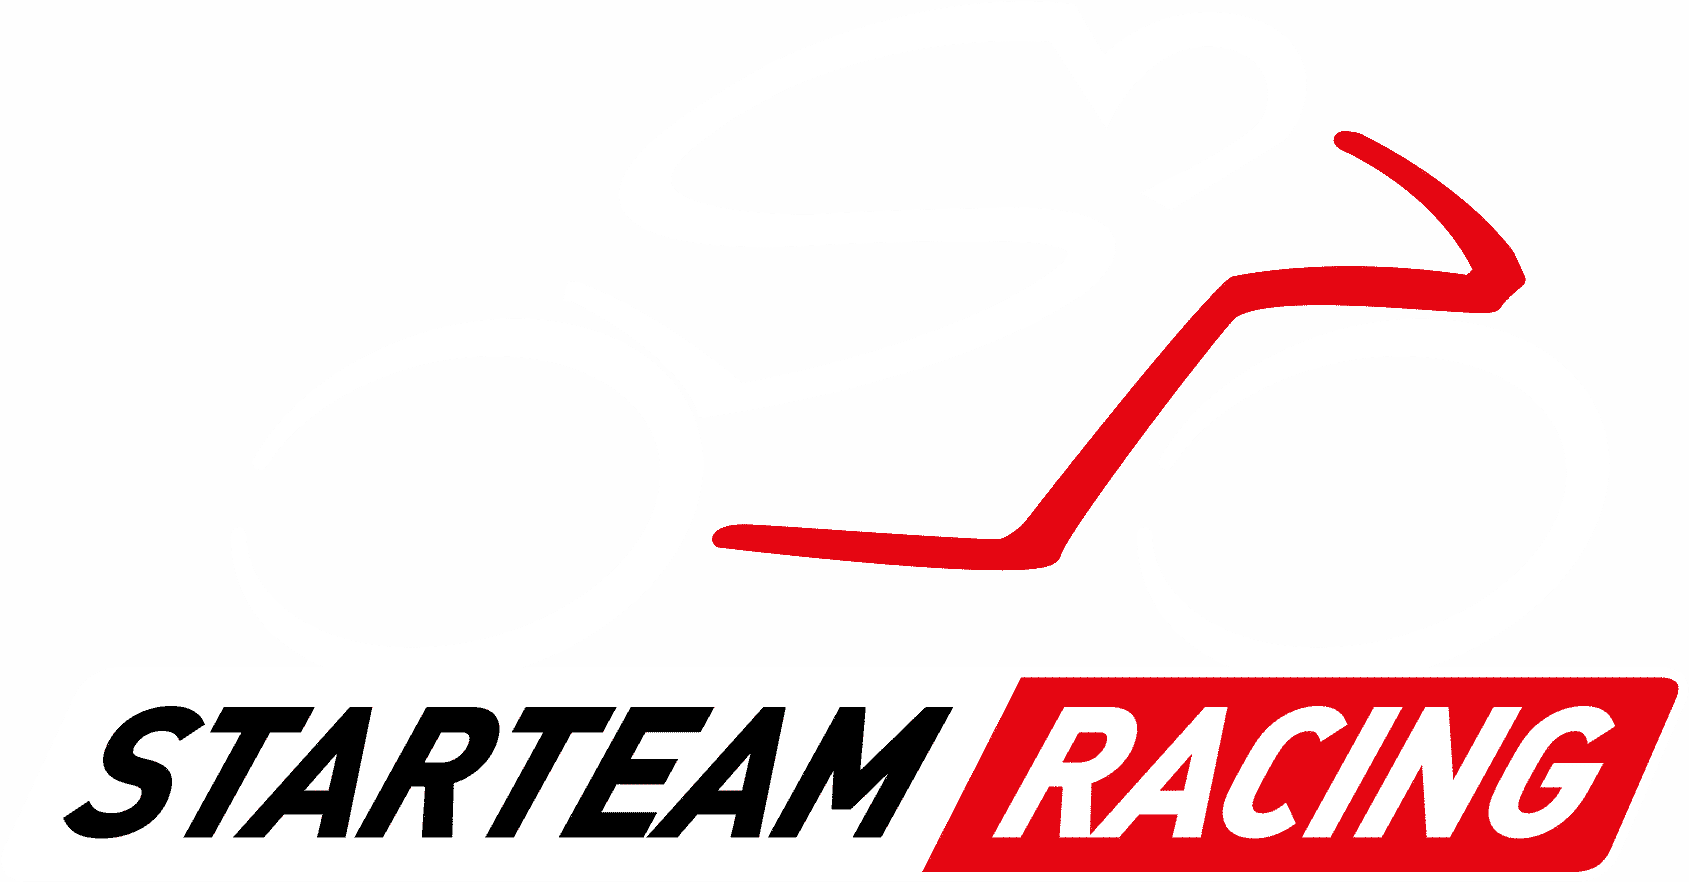 Starteam Racing